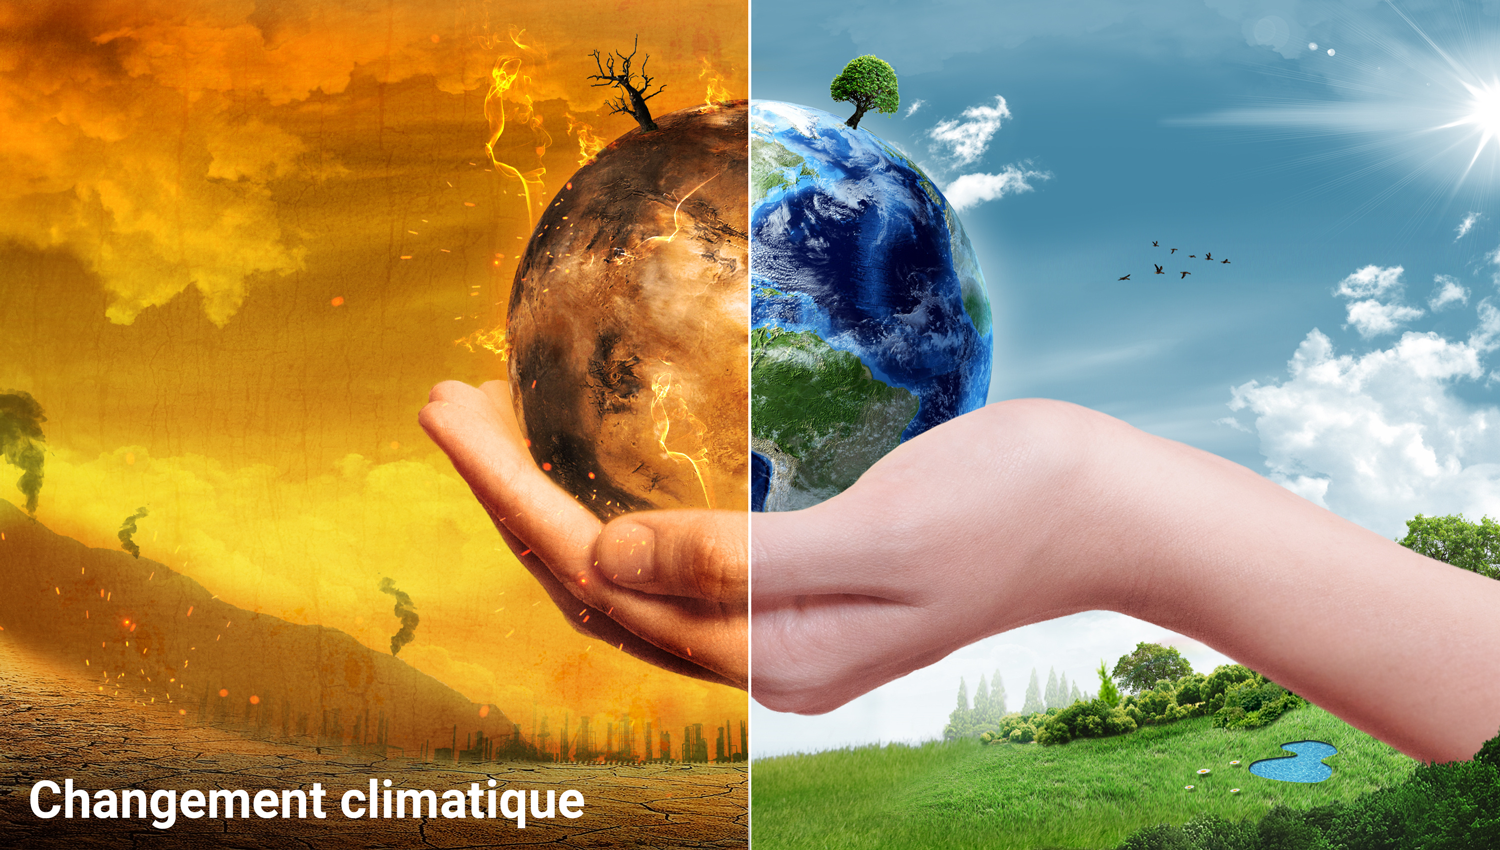 Le changement climatique est l'une des plus importantes mégatendances globales. Elle a un impact profond sur la science et la société. (Image: Adobe Stock)